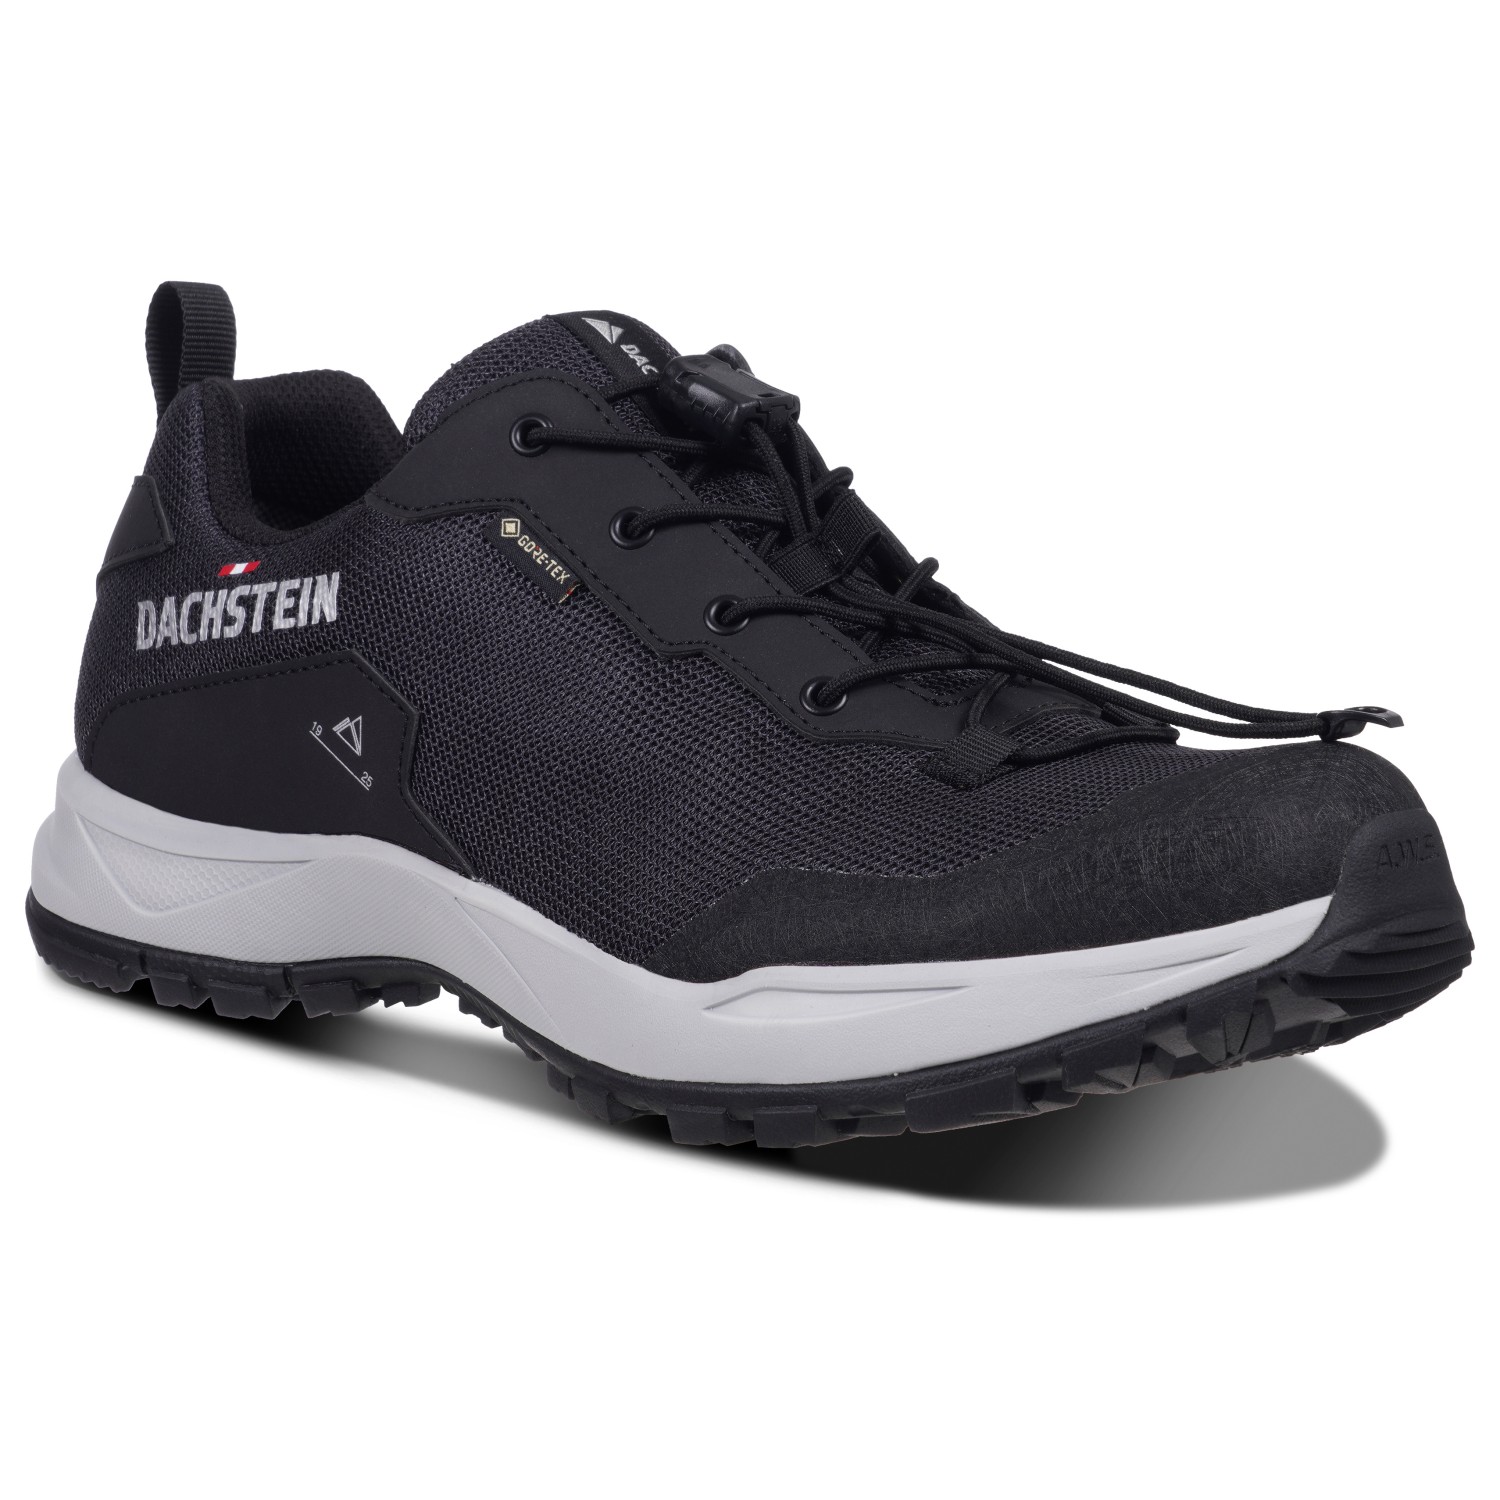 Мультиспортивная обувь Dachstein Delta Ascent GTX, черный